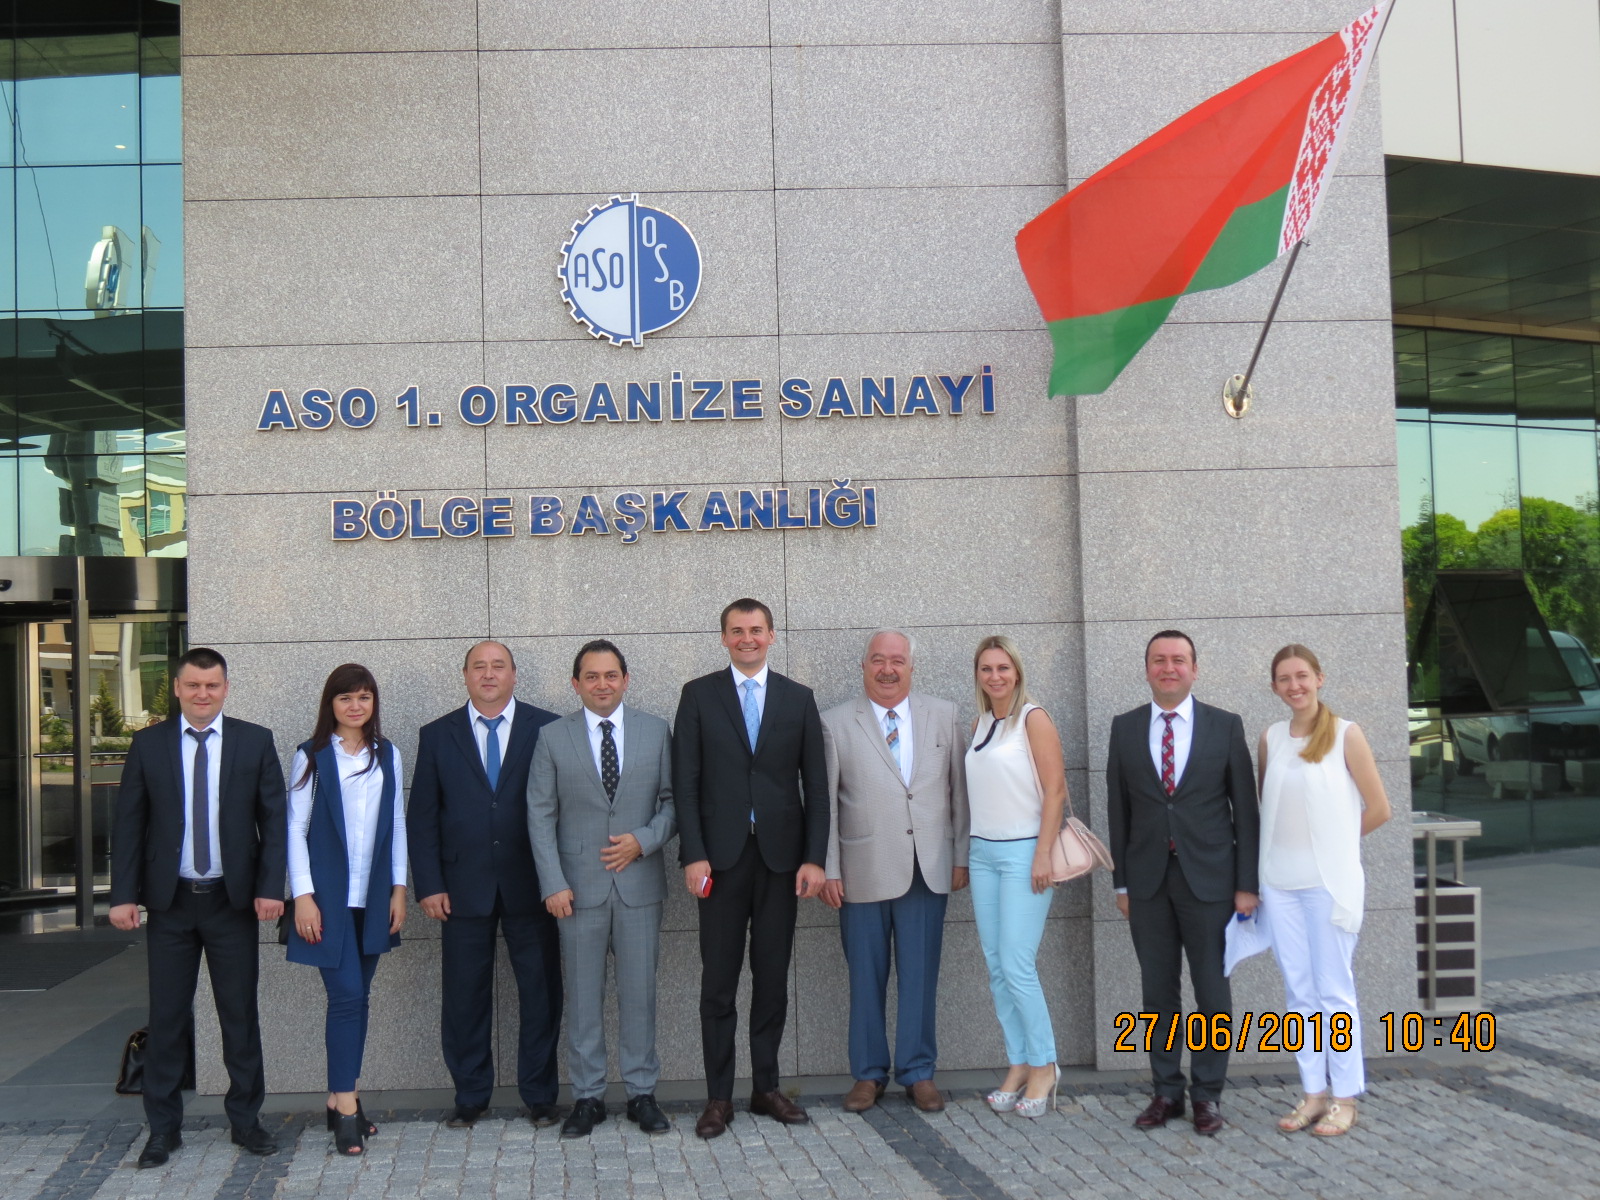 Визит делегации белорусских деловых кругов в Анкару